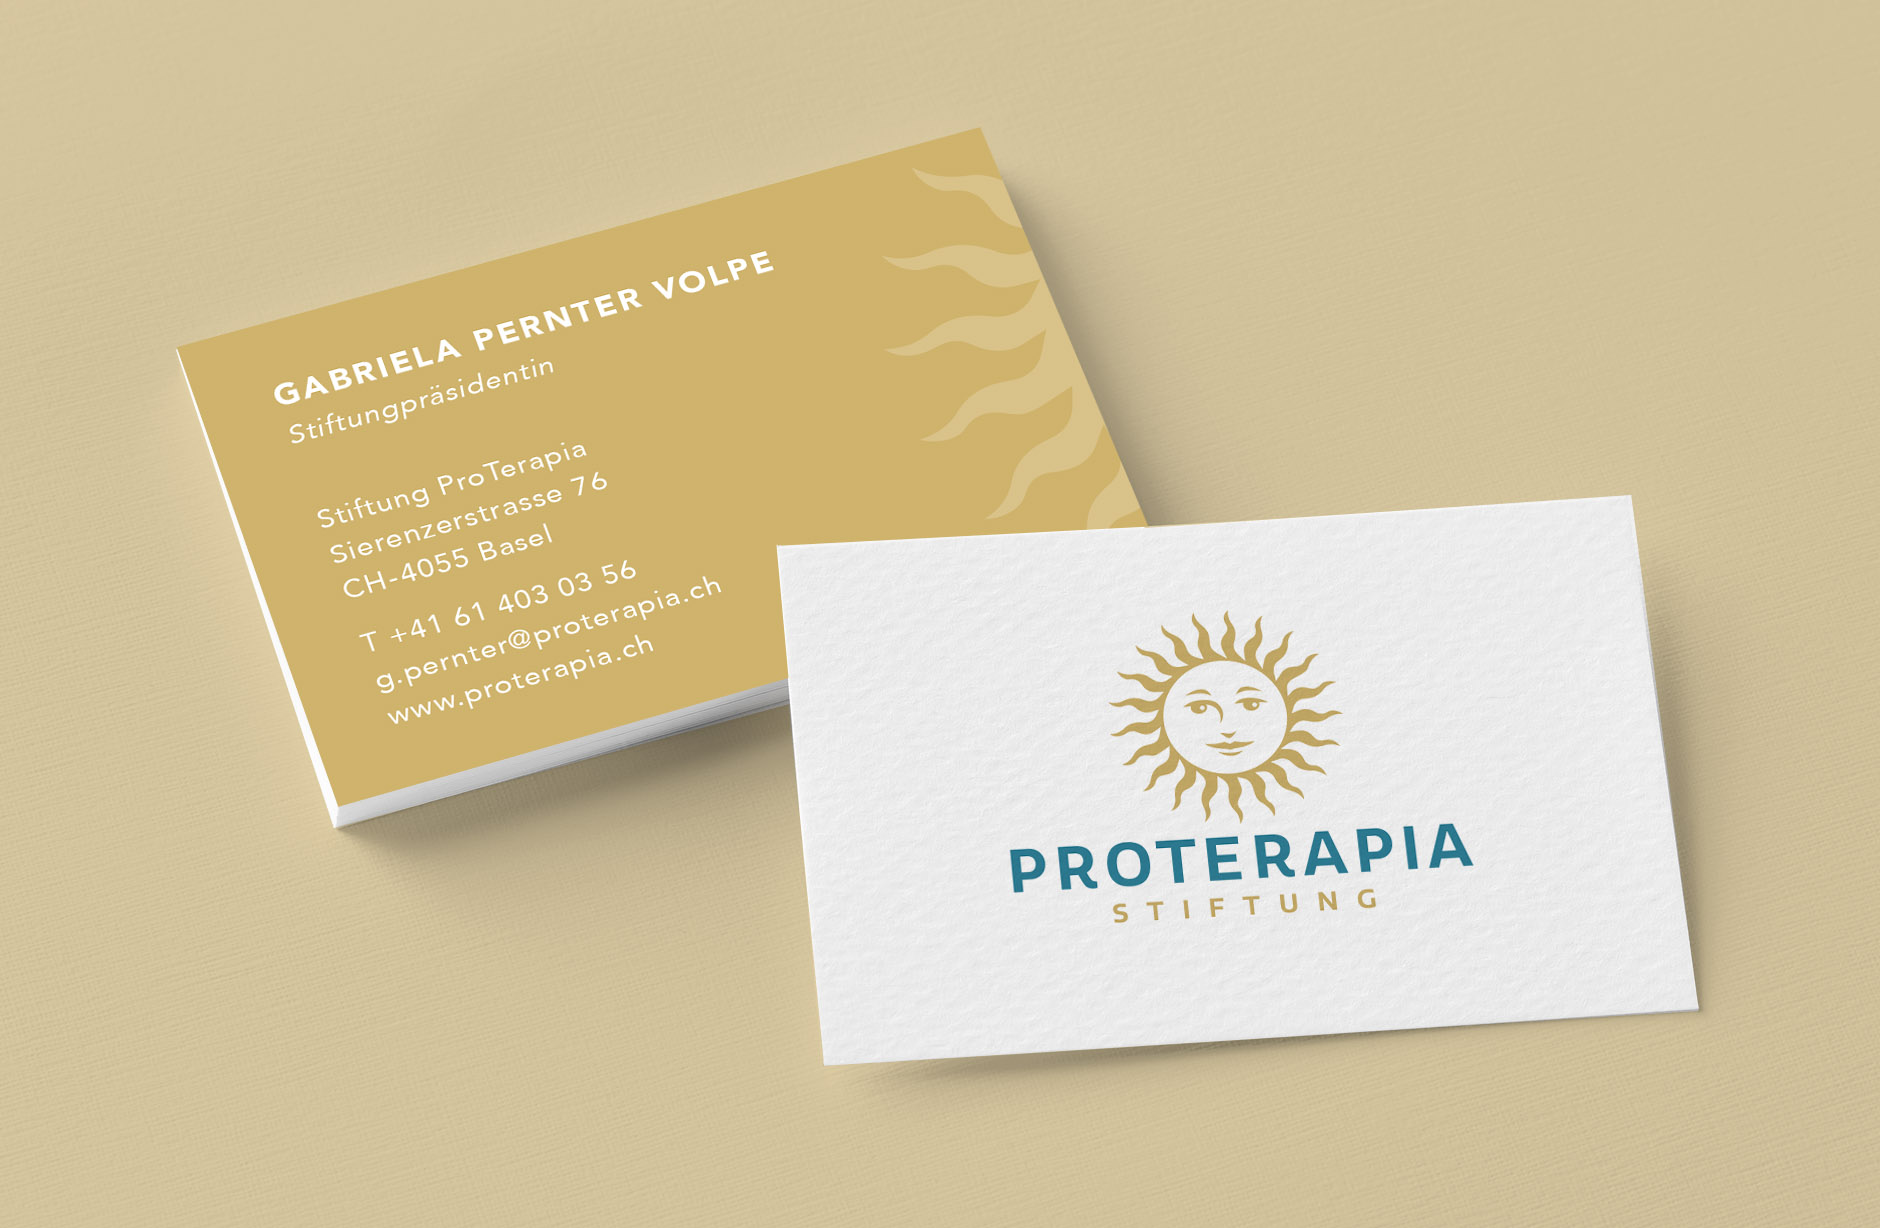 ProTerapia Visitenkarten Design – Newsign GmbH